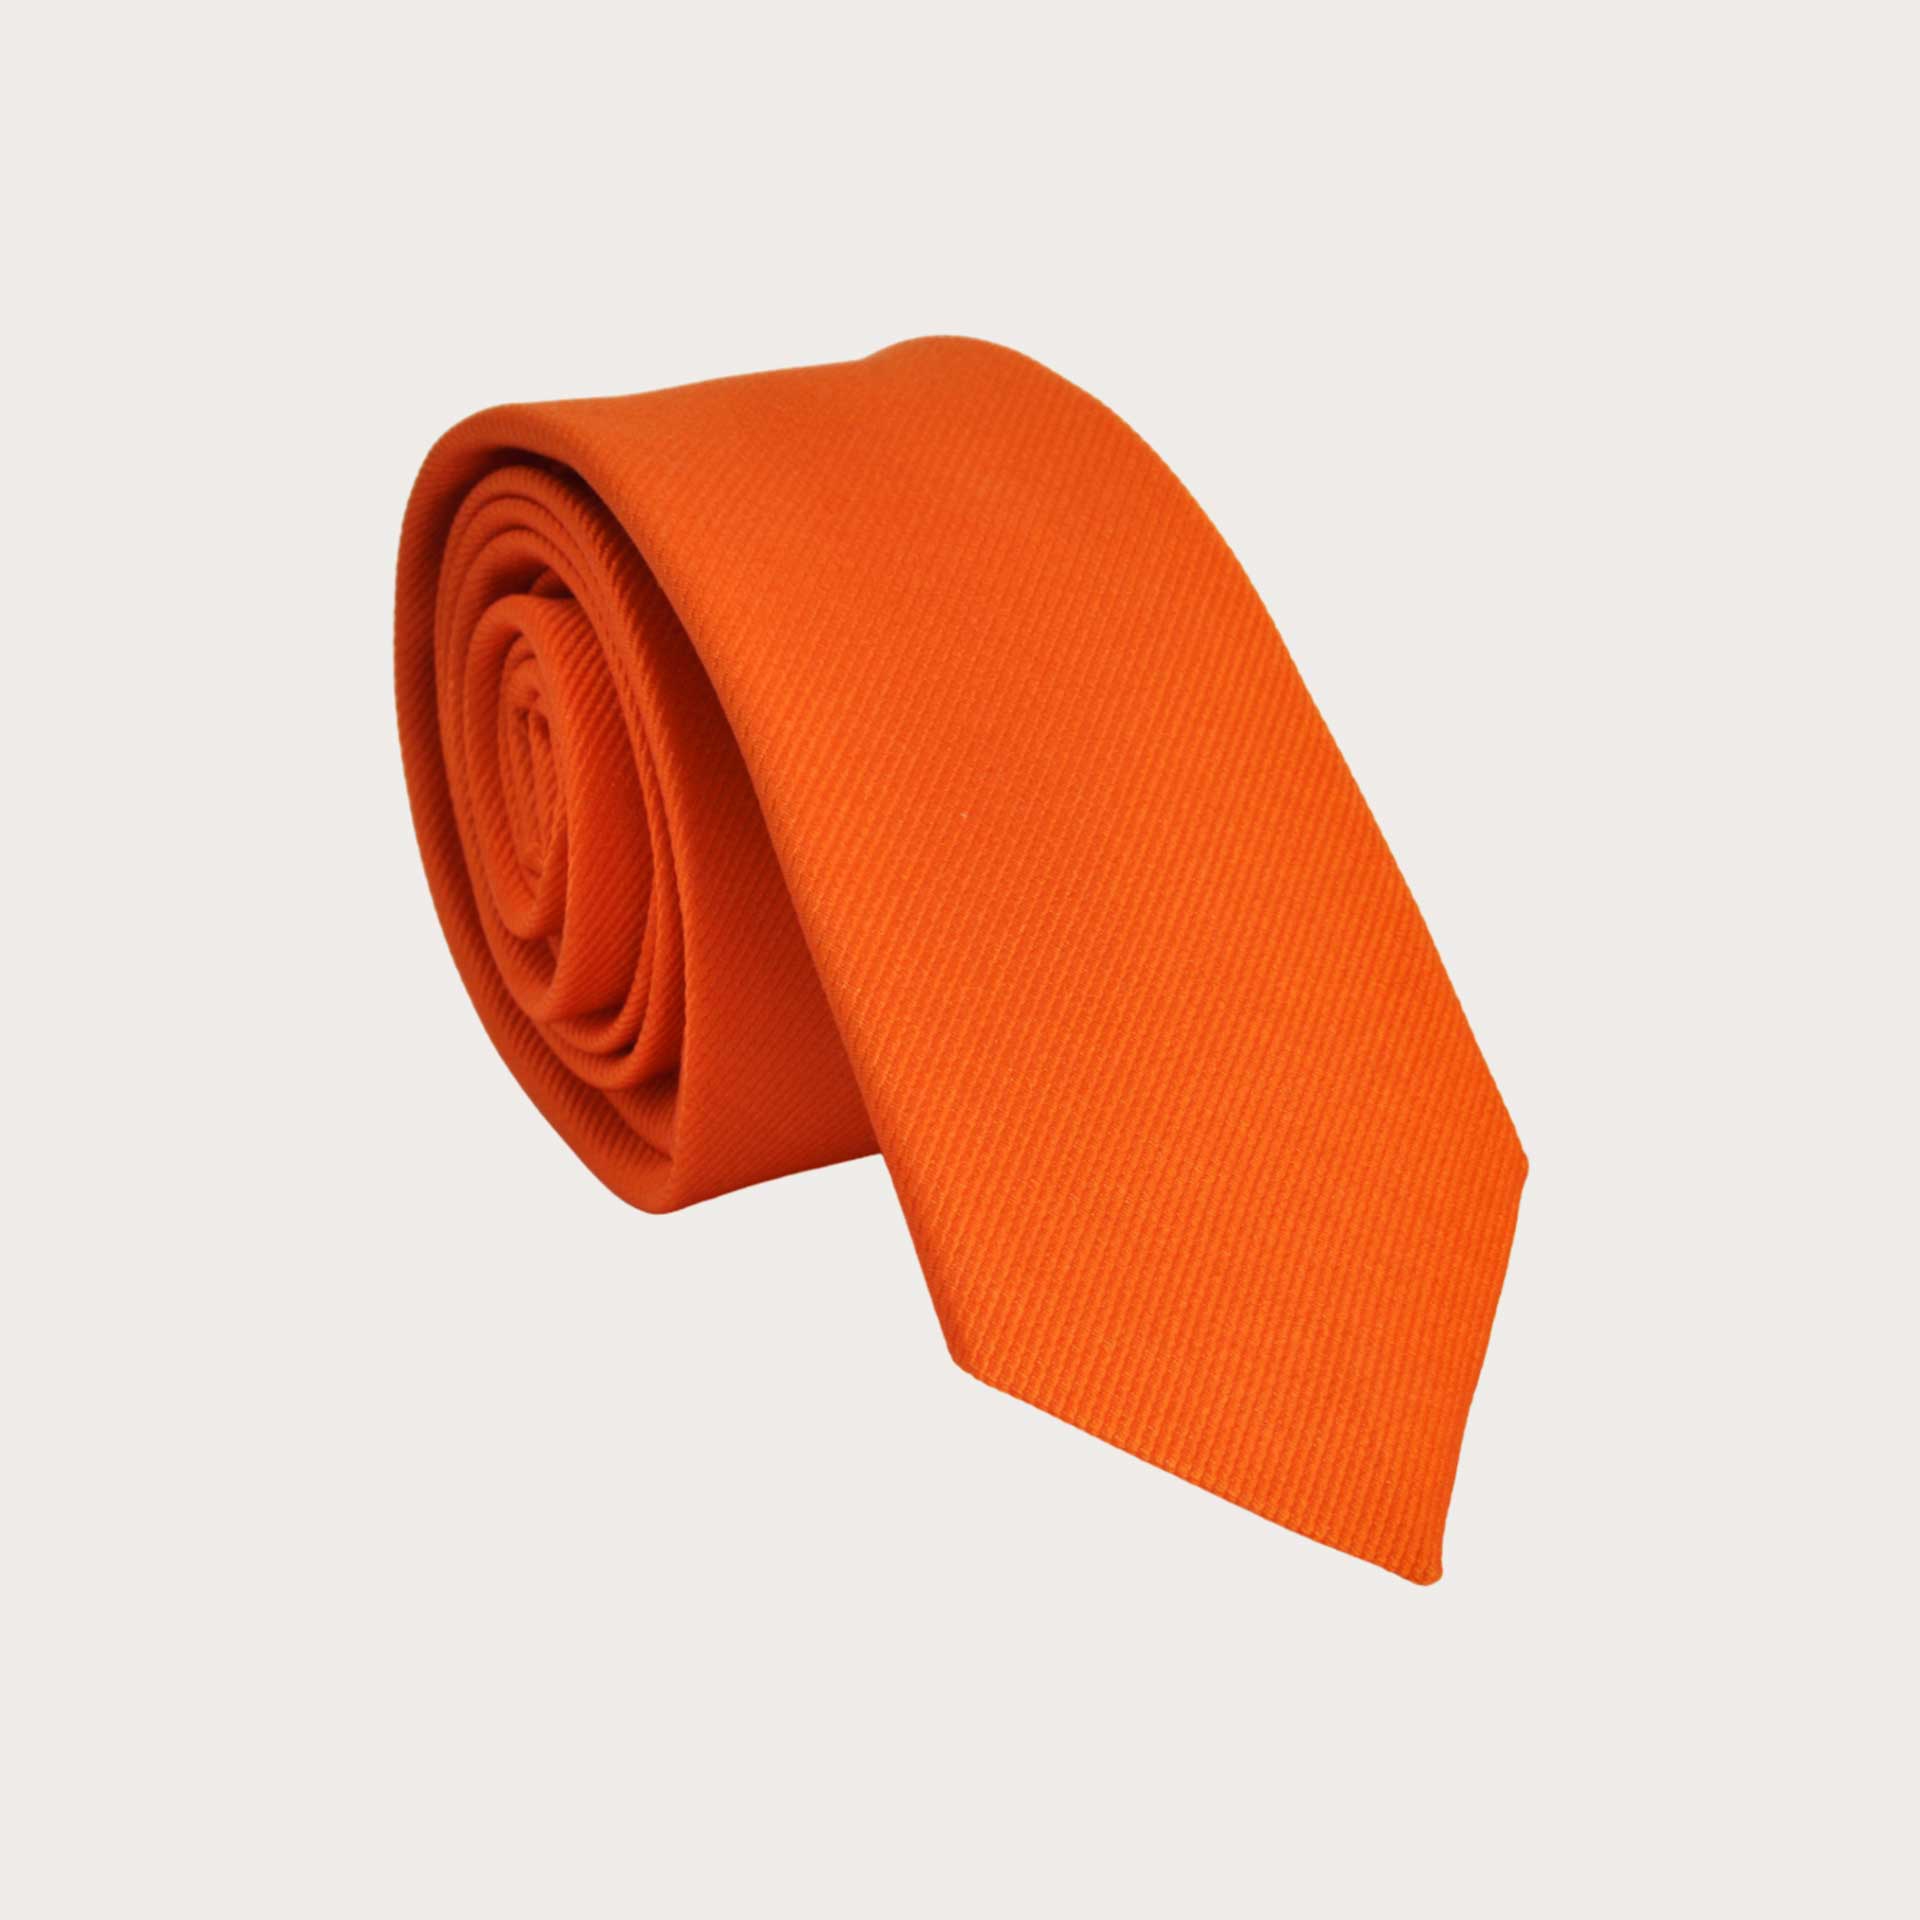 Corbata estrecha naranja de pura seda